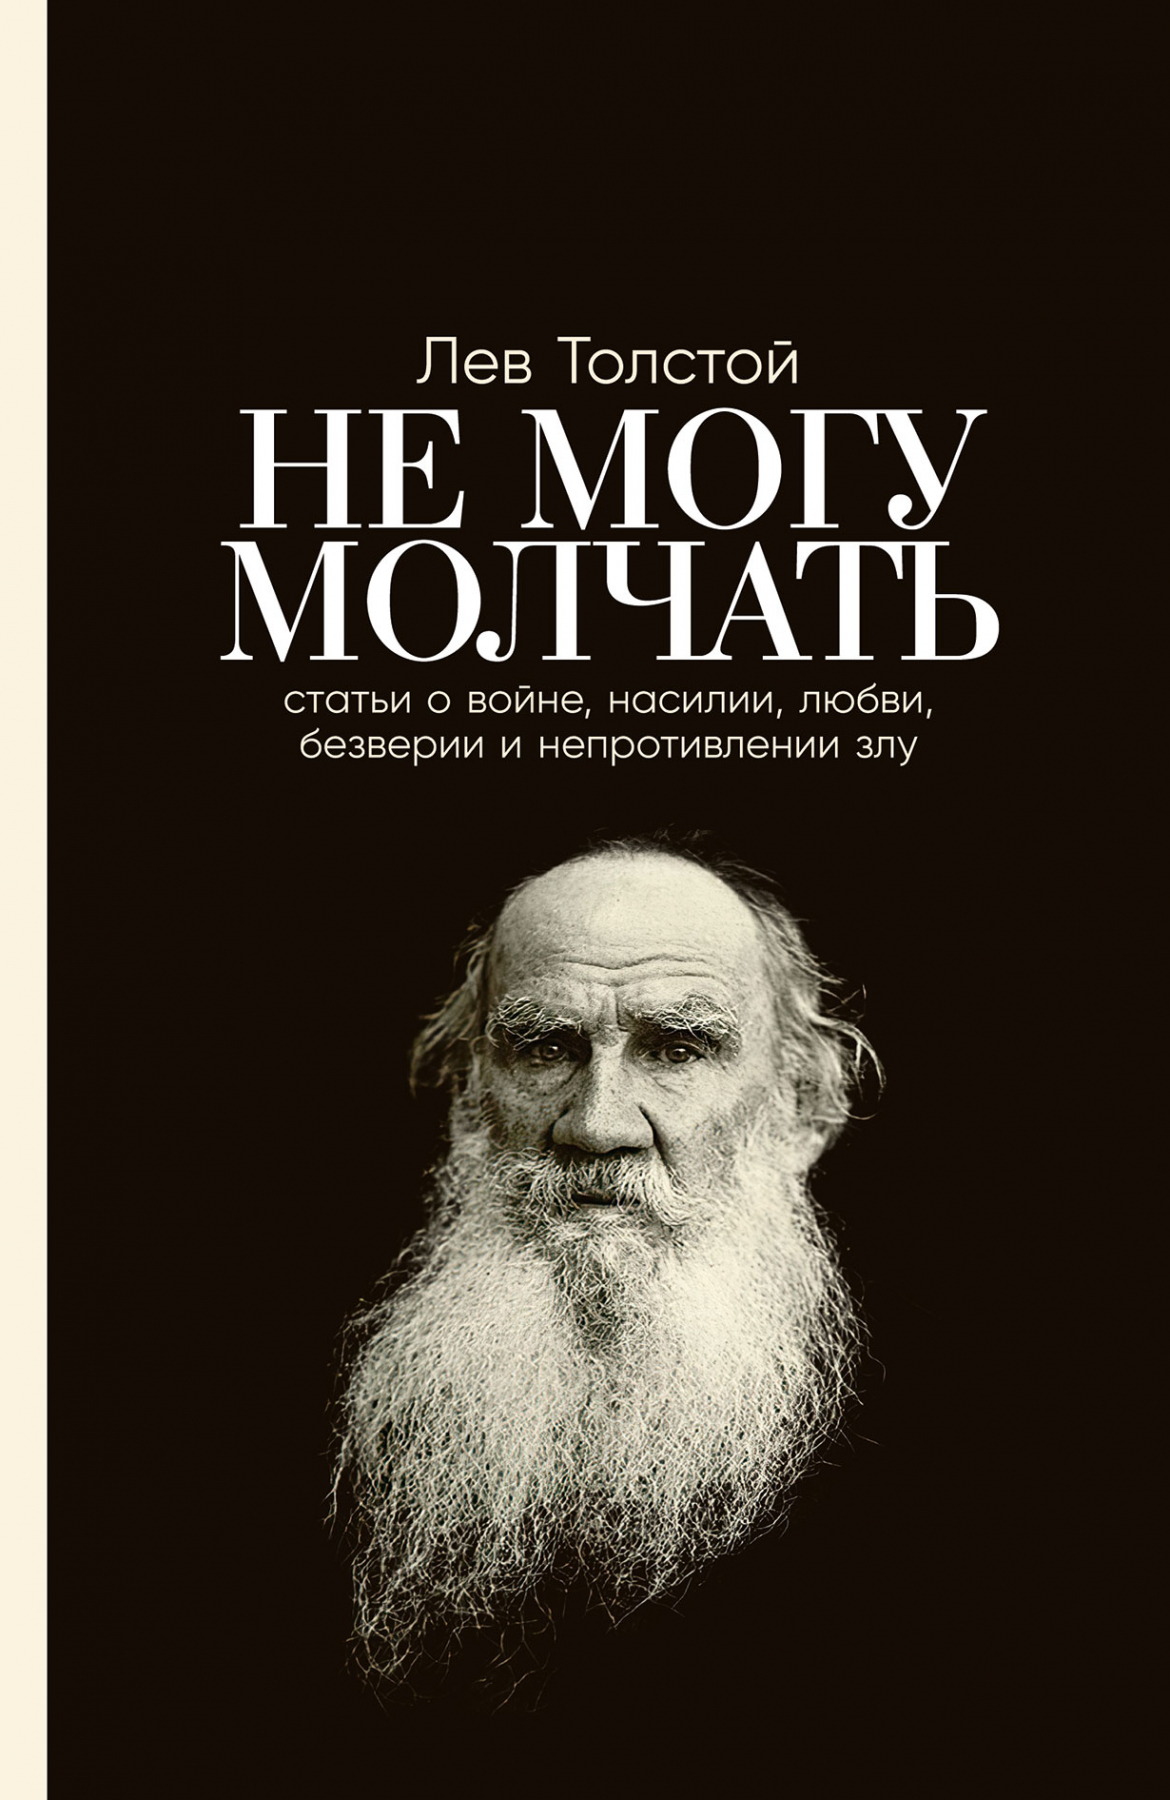 Толстой Лев Николаевич - Не могу молчать: Статьи о войне, насилии, любви, безверии и непротивлении злу